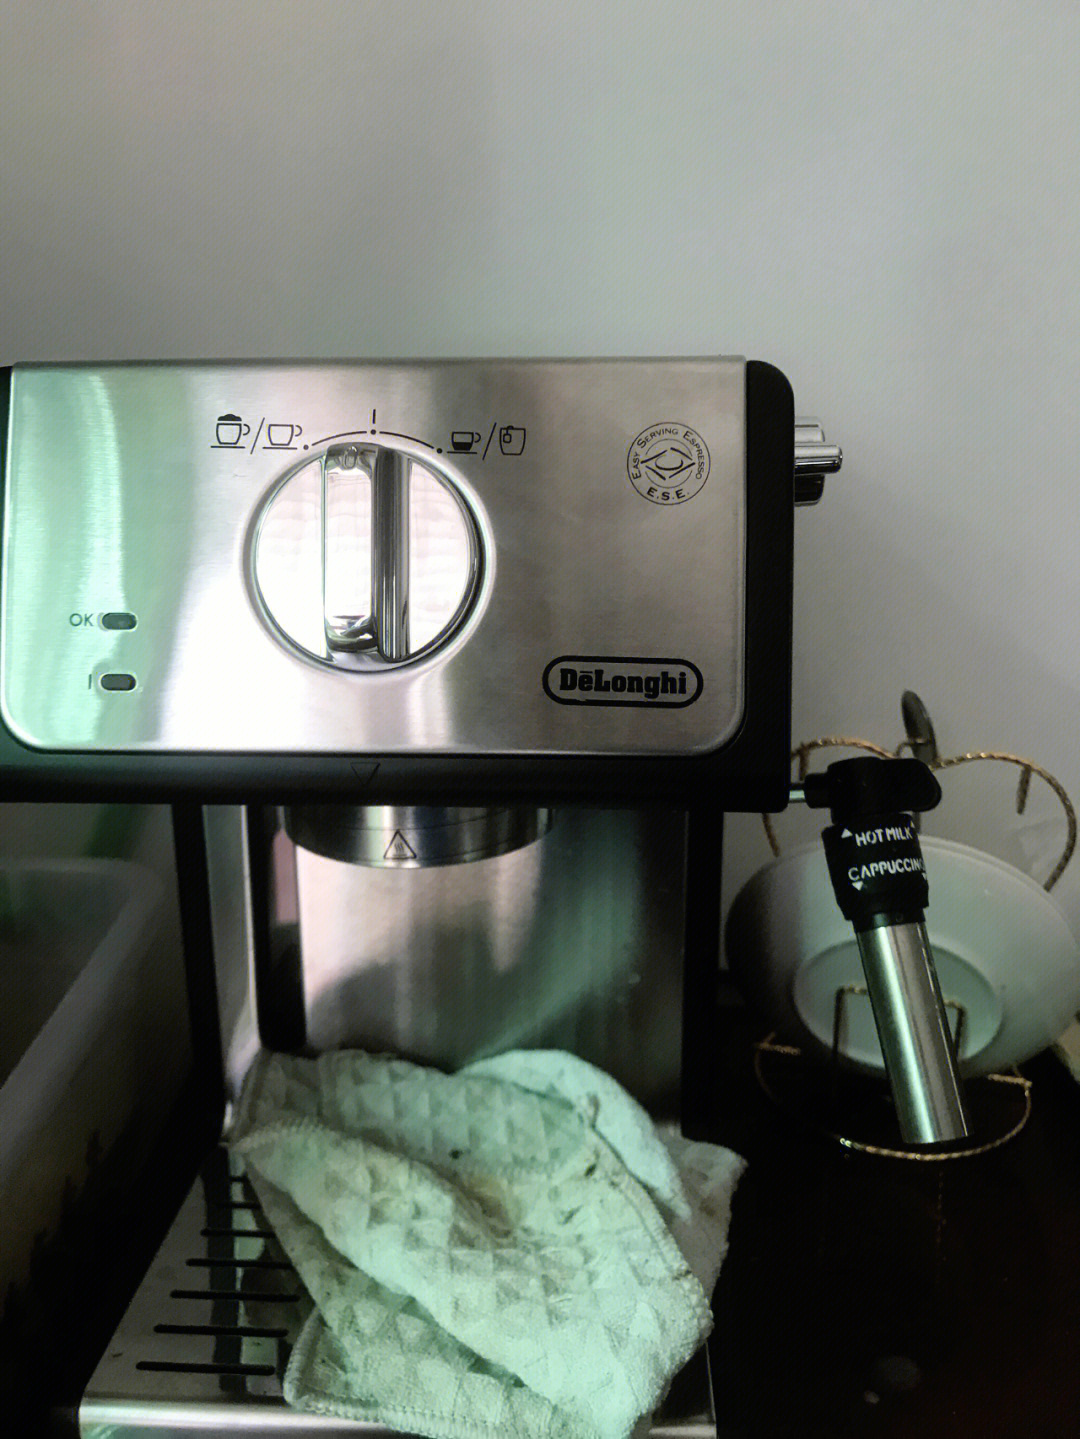 德龙咖啡机萃取器卡住图片